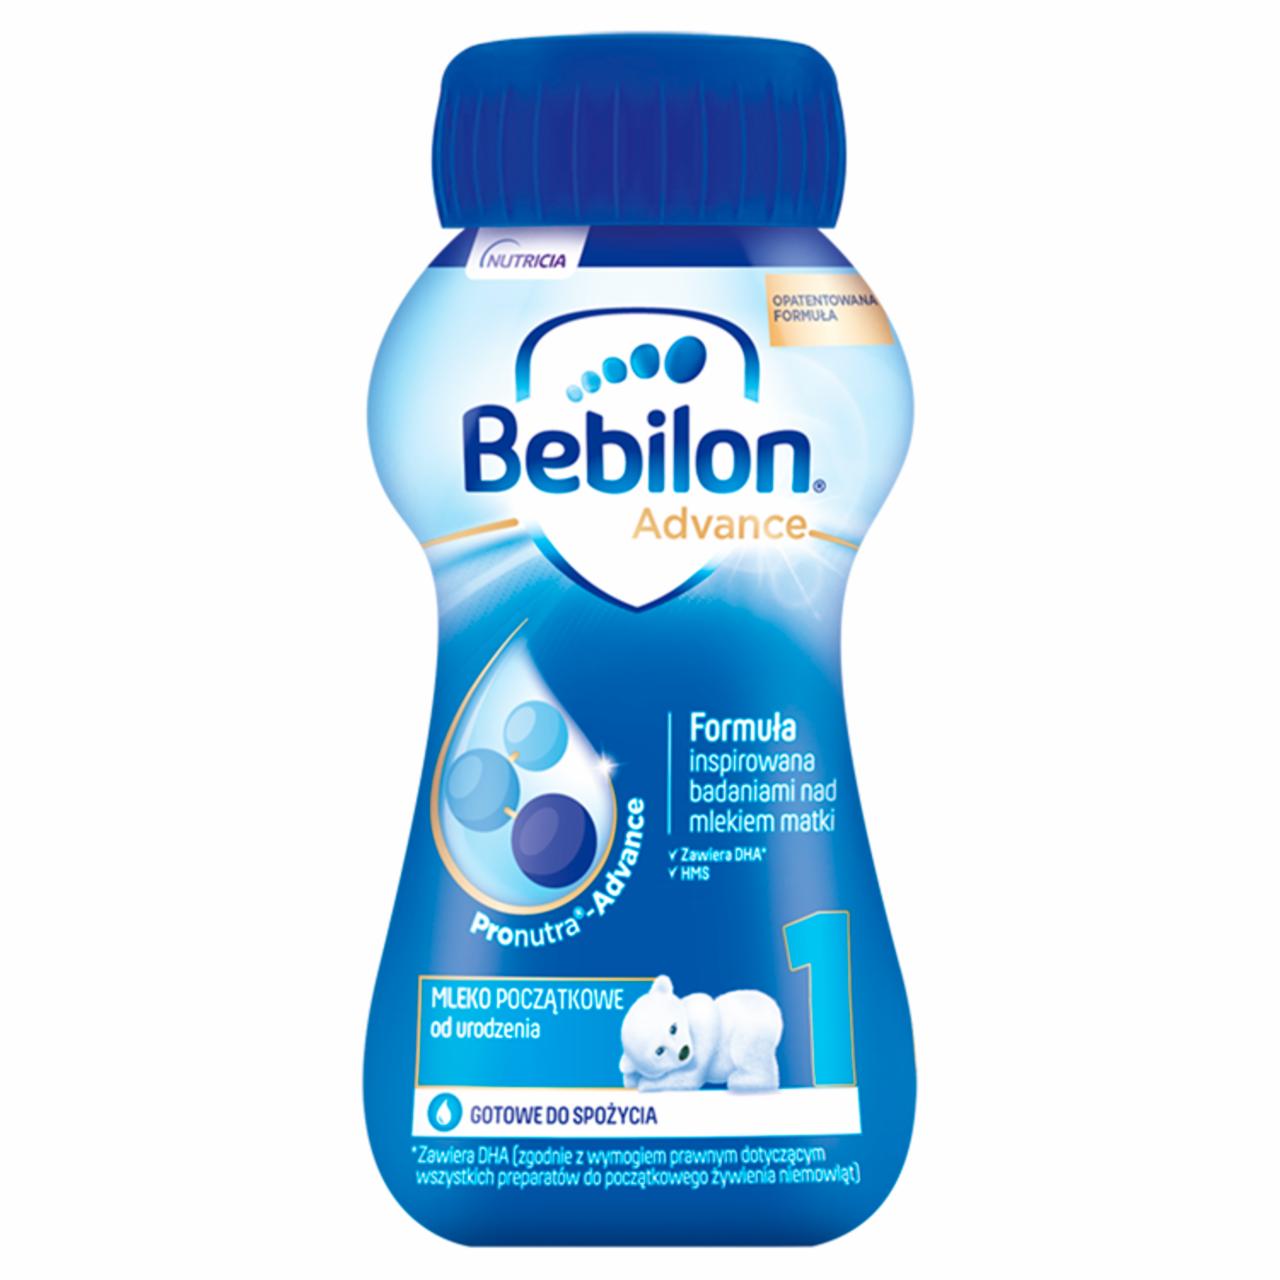 Zdjęcia - Bebilon 1 Advance Pronutra Mleko początkowe od urodzenia 200 ml